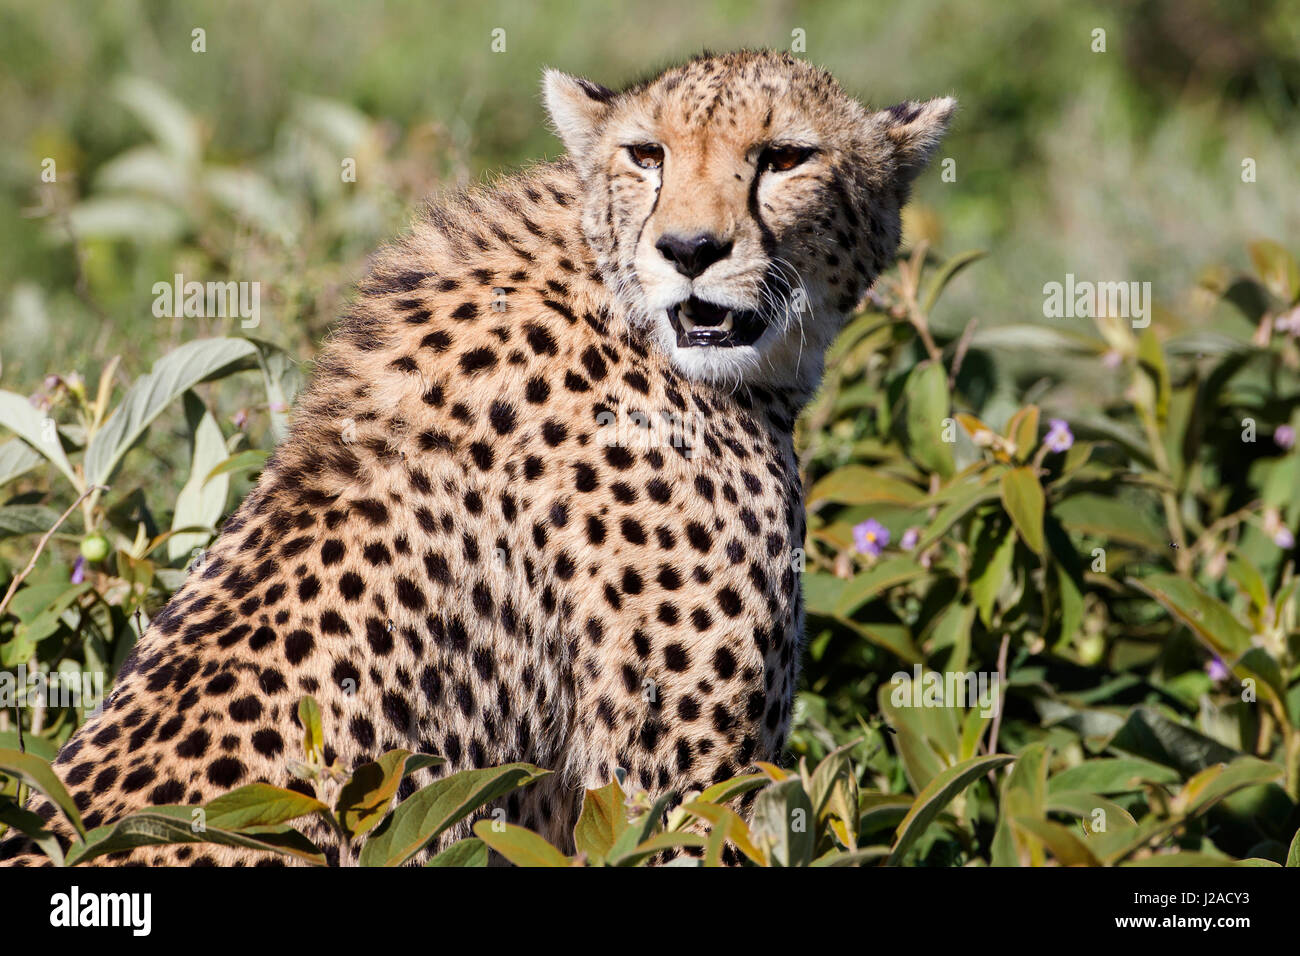 Seul adulte le guépard, le manteau argenté soulevées, se trouve partiellement cachés dans les feuilles vertes, bouche ouverte, dents en avant en partie visible, faisant face à l'appareil photo, la Ngorongoro Conservation Area, Tanzania Banque D'Images